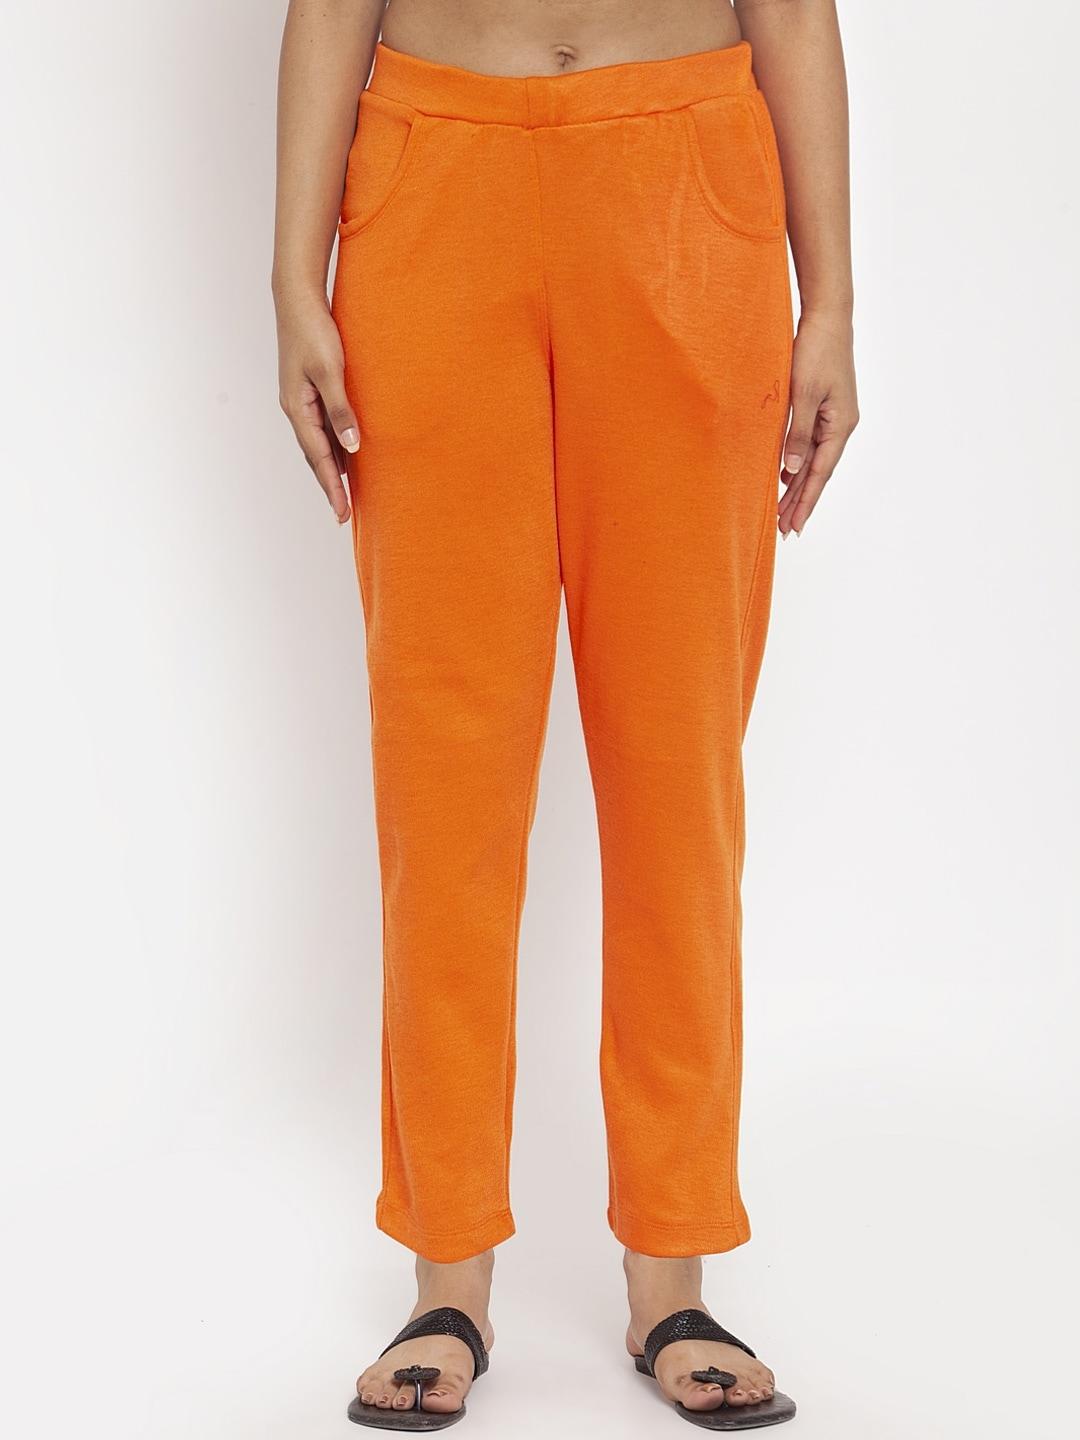 tag 7 women orange ethnic cigarette trousers